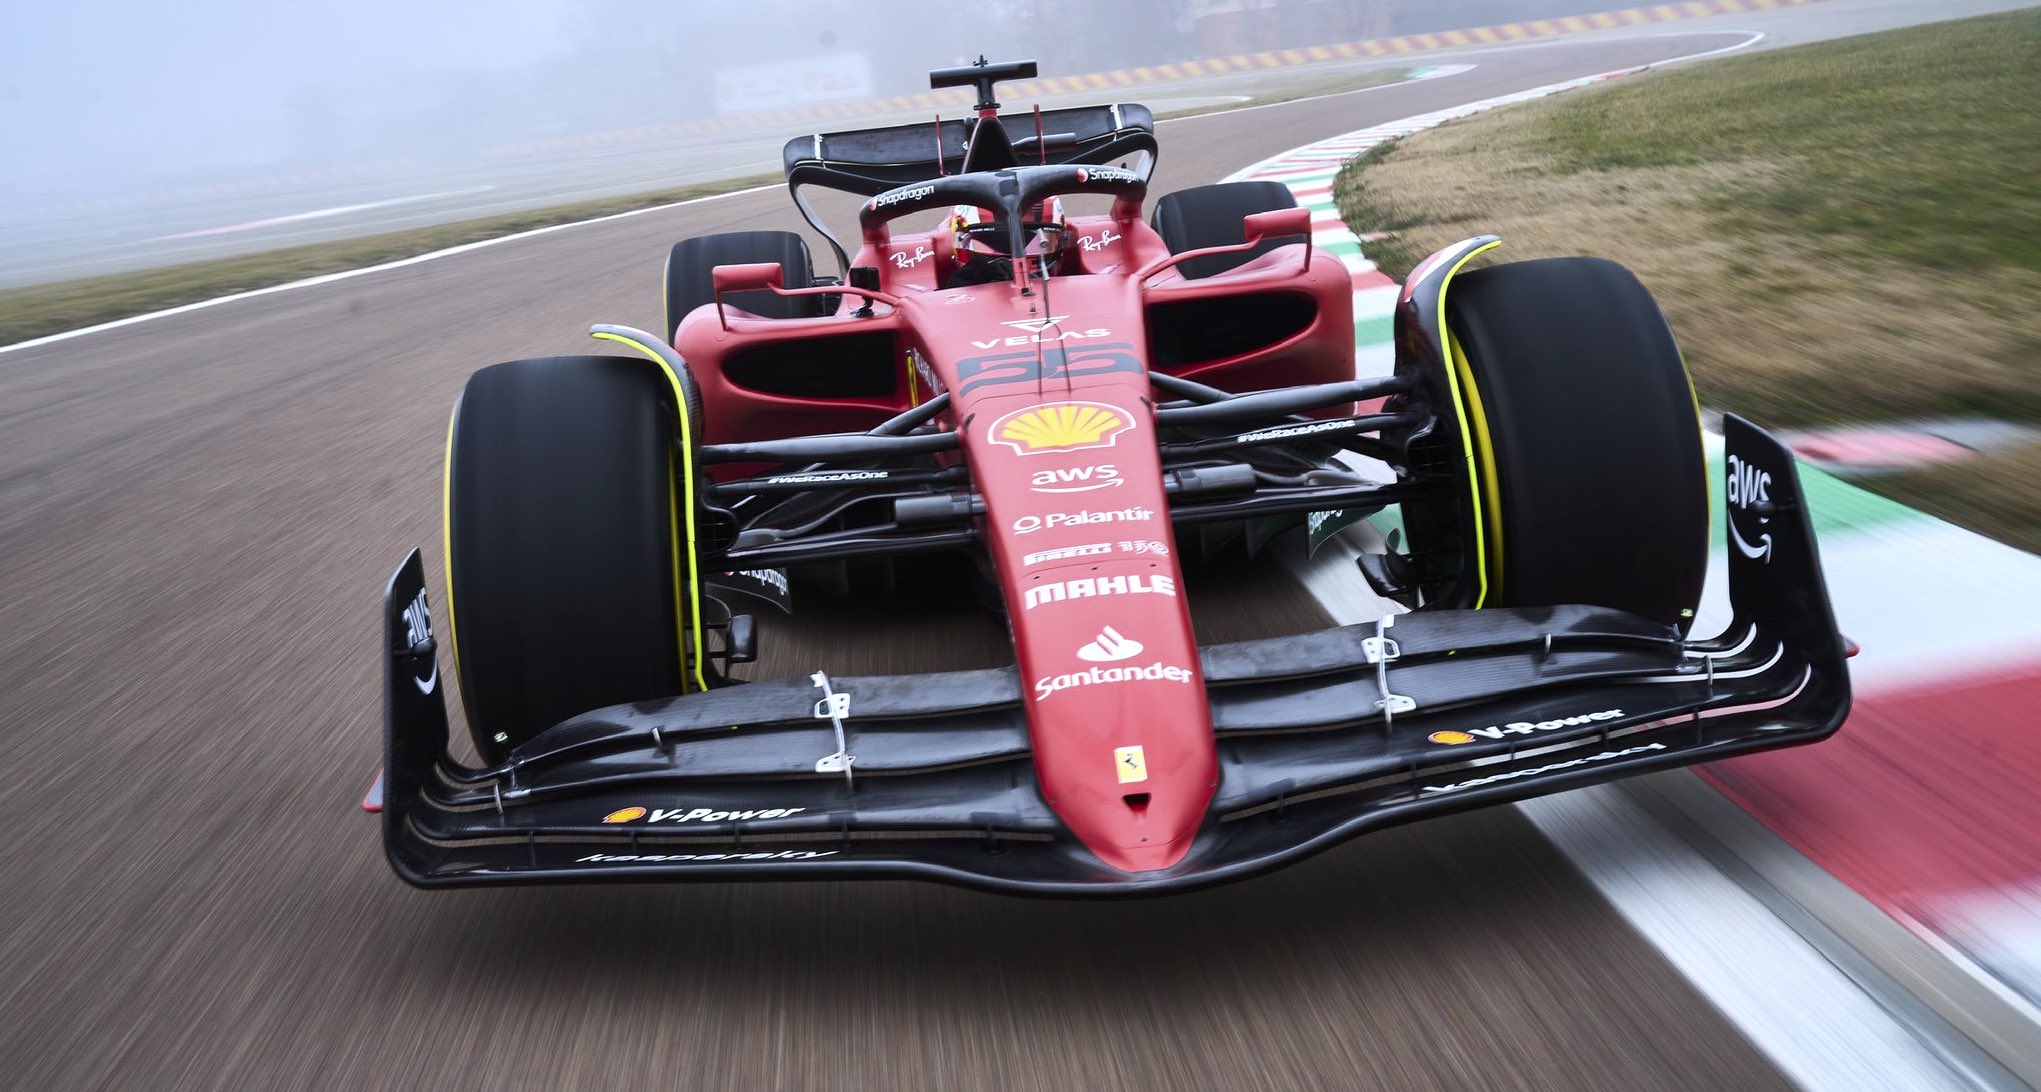 Scuderia Ferrari Logo 2022